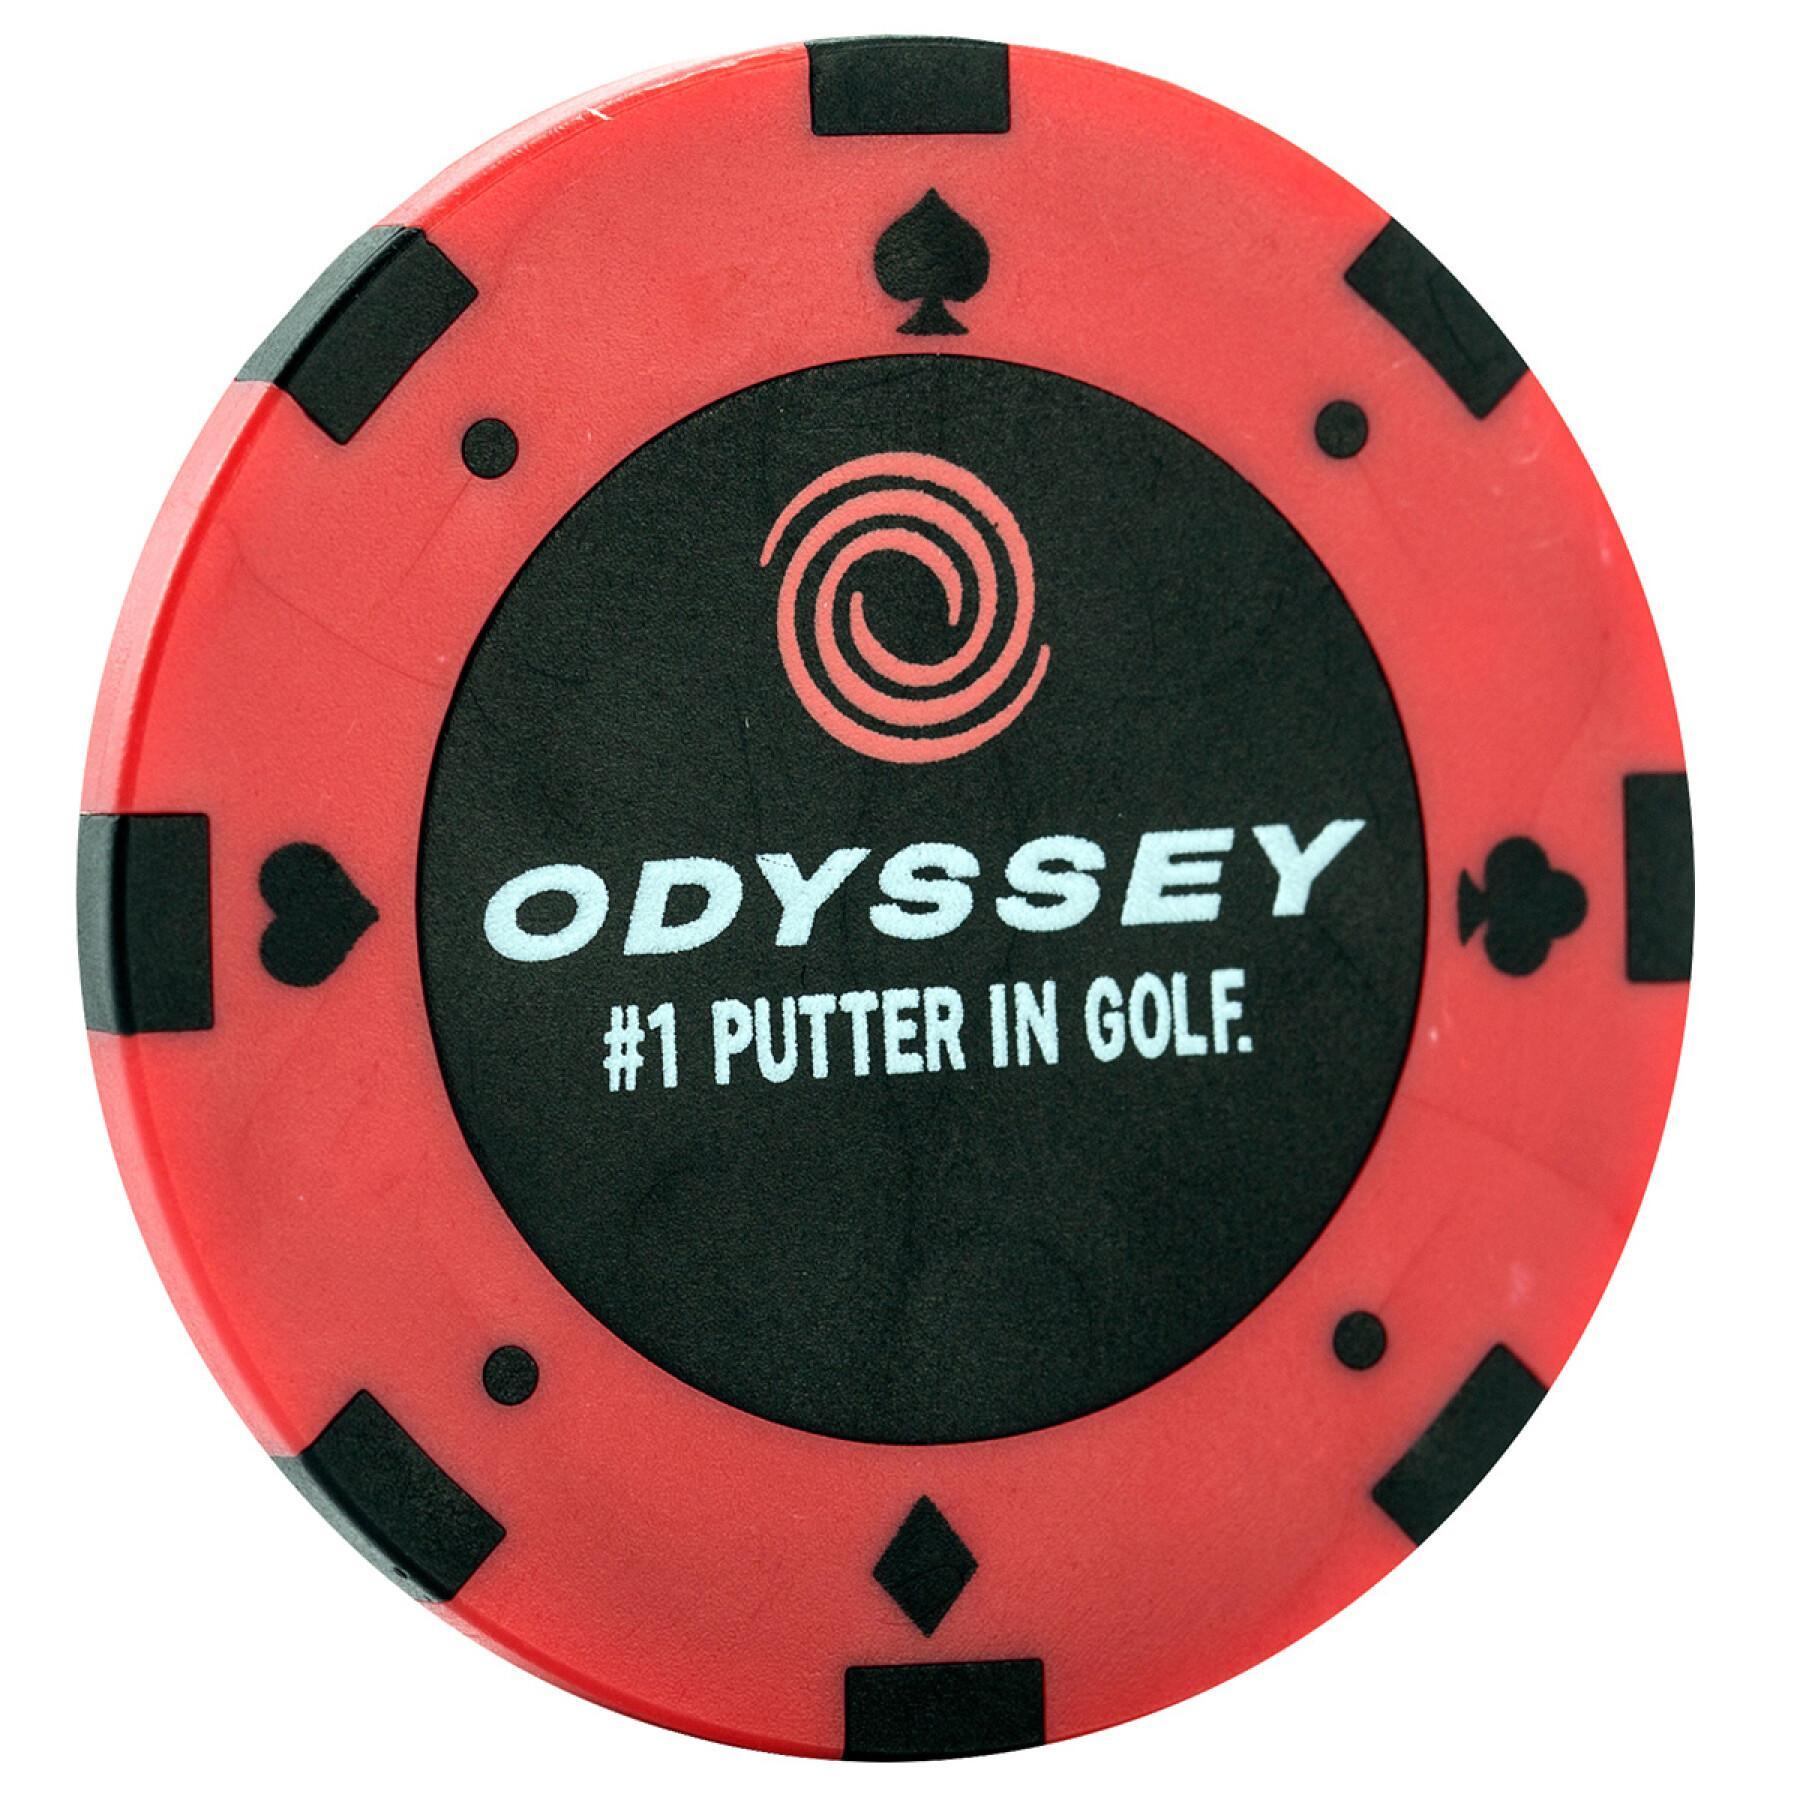 Marcatori di palline da golf Callaway odyssey poker chip